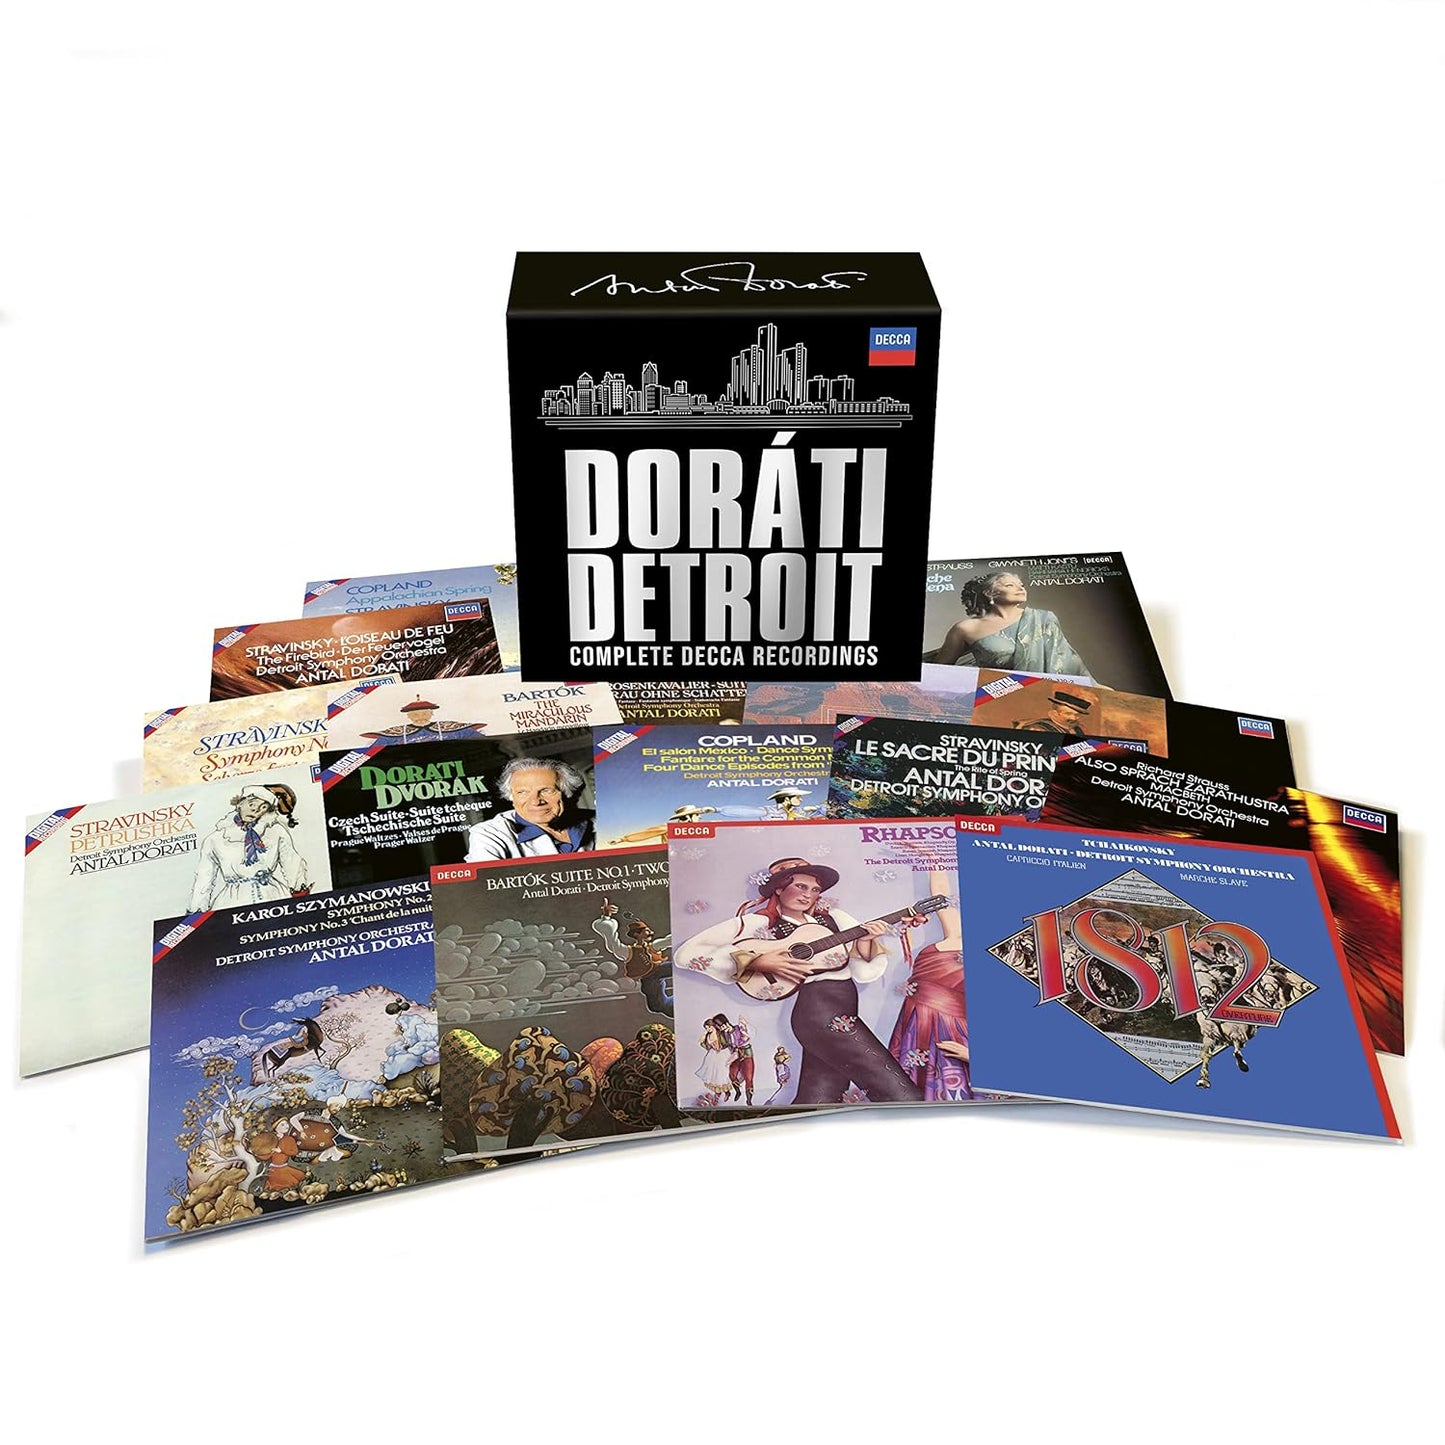 DORATI IN DETROIT - THE COMPLETE DECCA RECORDINGS (18 CDS)